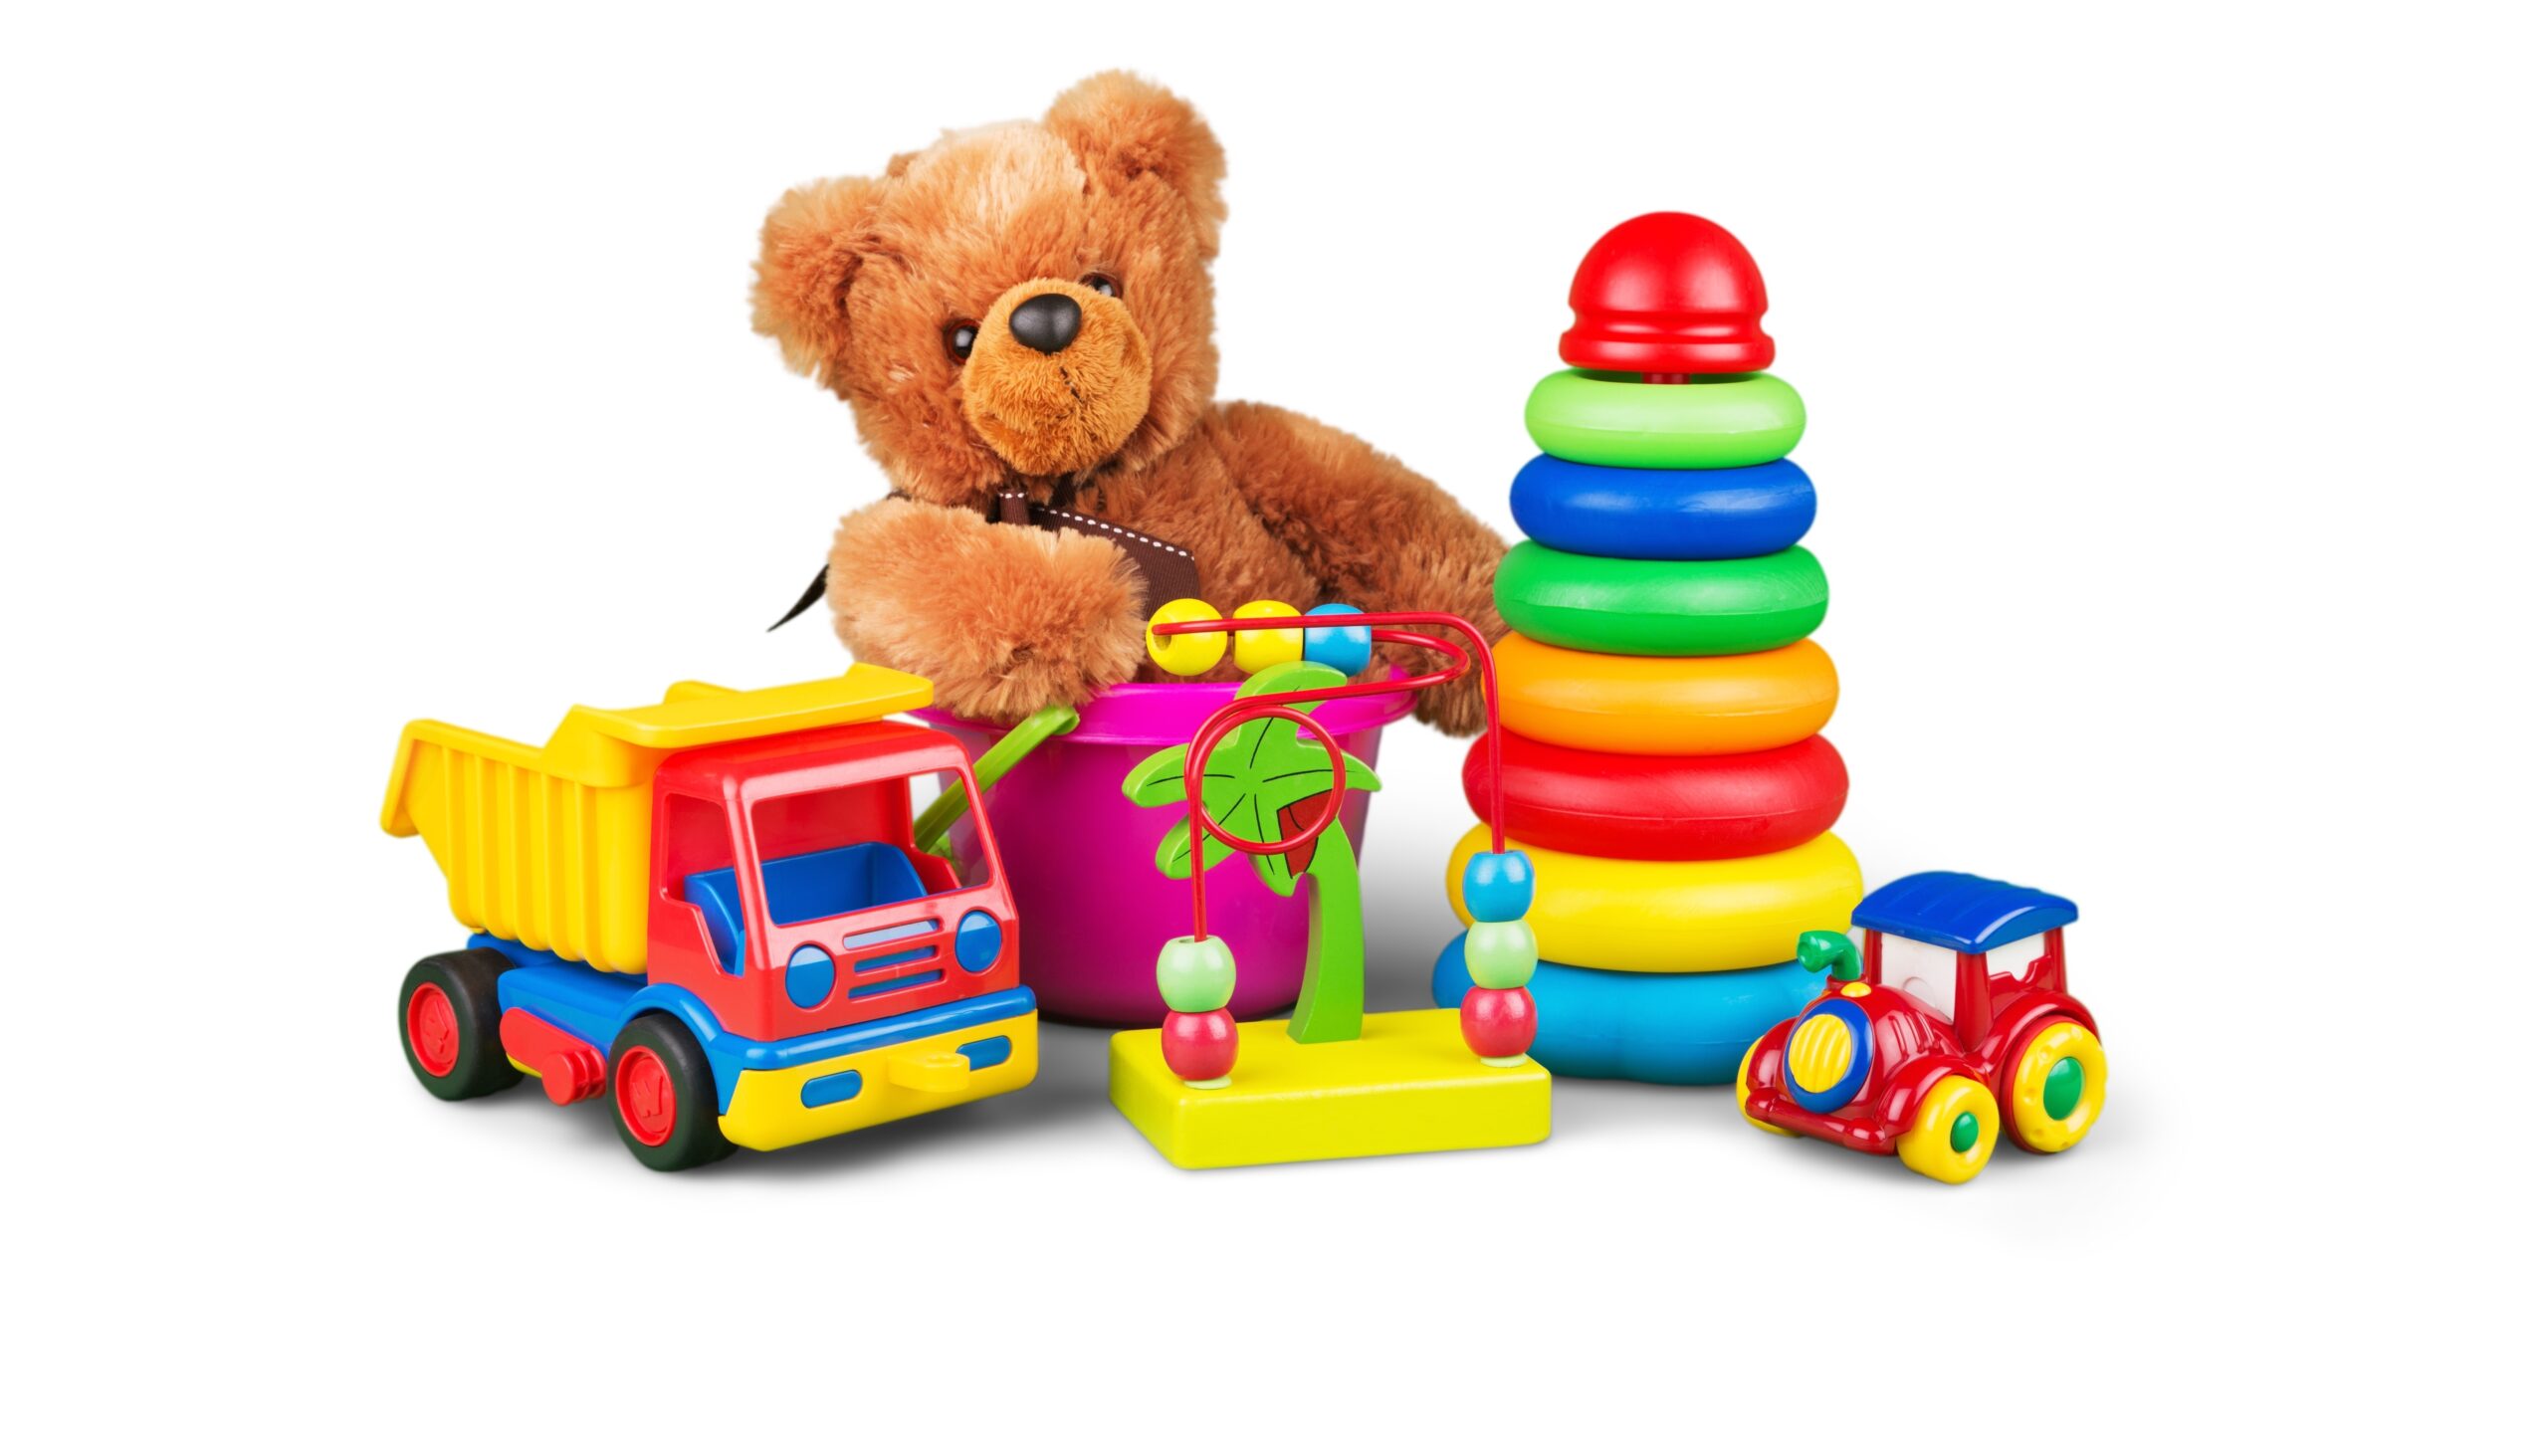 camión de juguete, oso de peluche y otros juguetes para niños